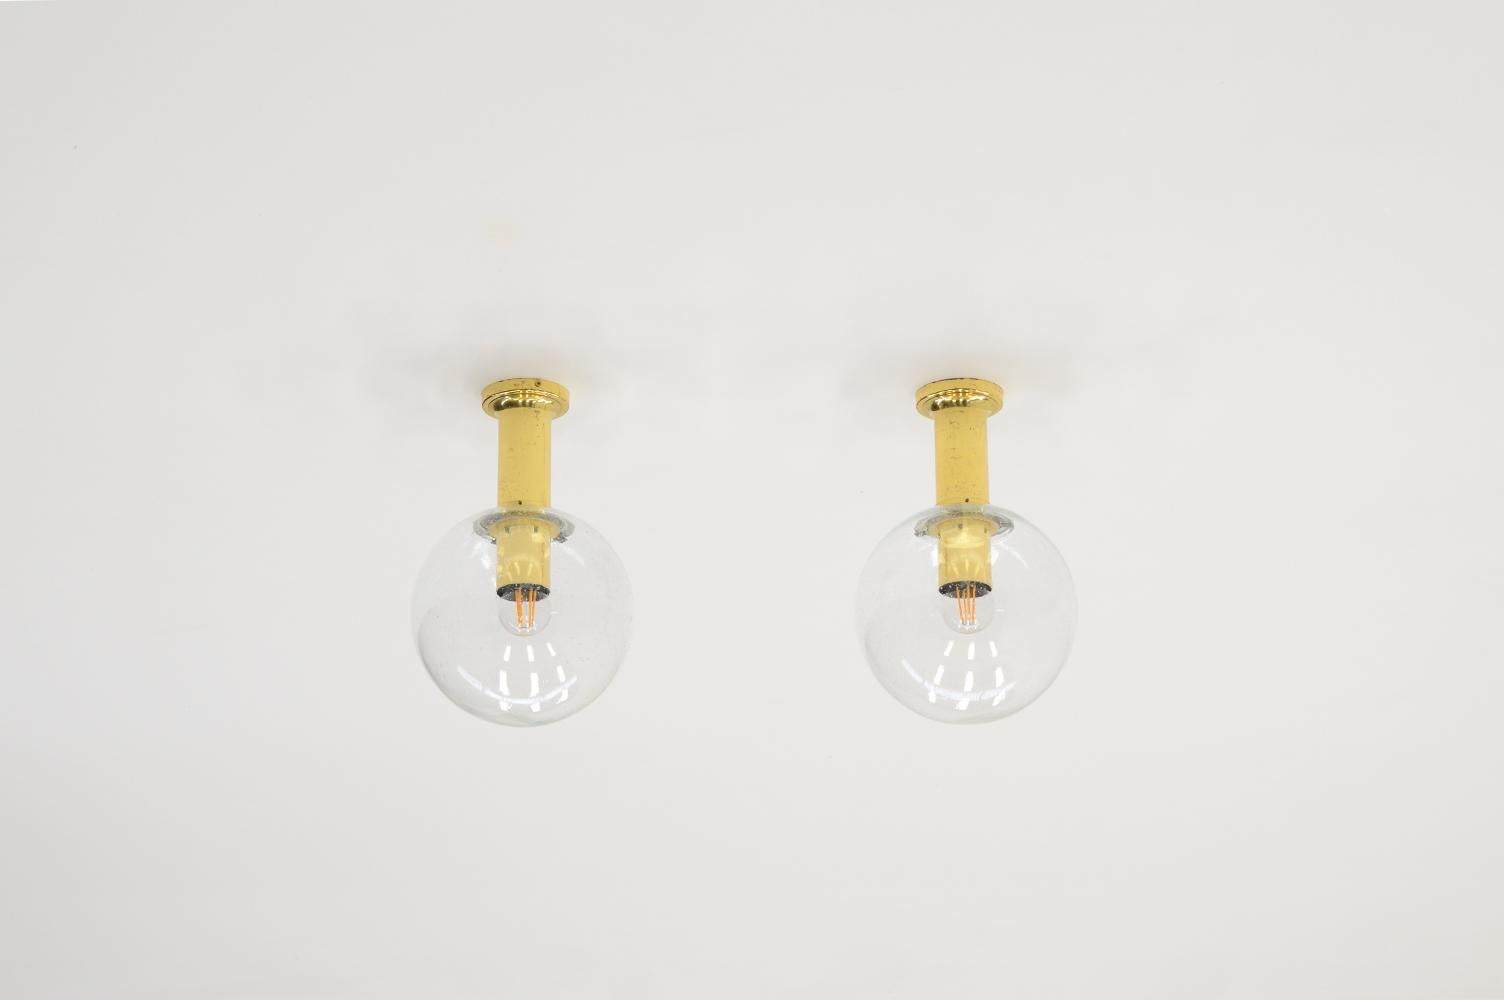 Ensemble de 2 lampes de plafond de Glashütte Limburg, Allemagne, années 1970. Luminaire en laiton avec globe en verre bullé. Contient une ampoule E27. Marqué à l'intérieur. Légère usure et patine sur le laiton. En bon état vintage. 4 pièces en